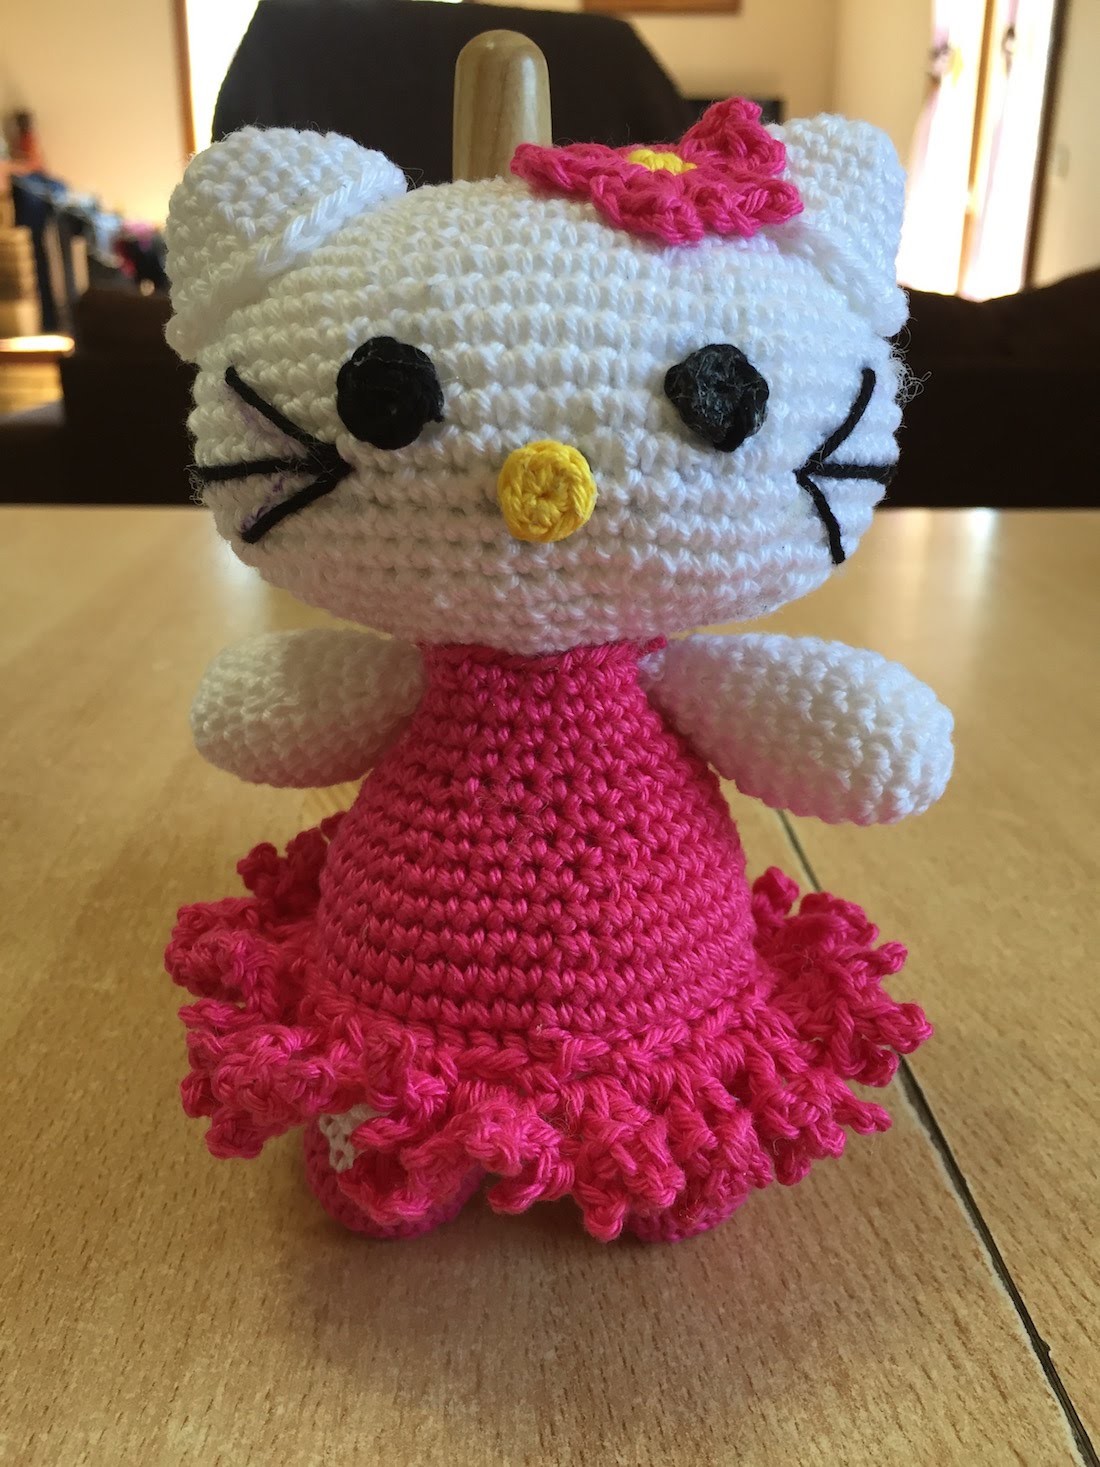 Tuto Hello kitty au crochet 1.2